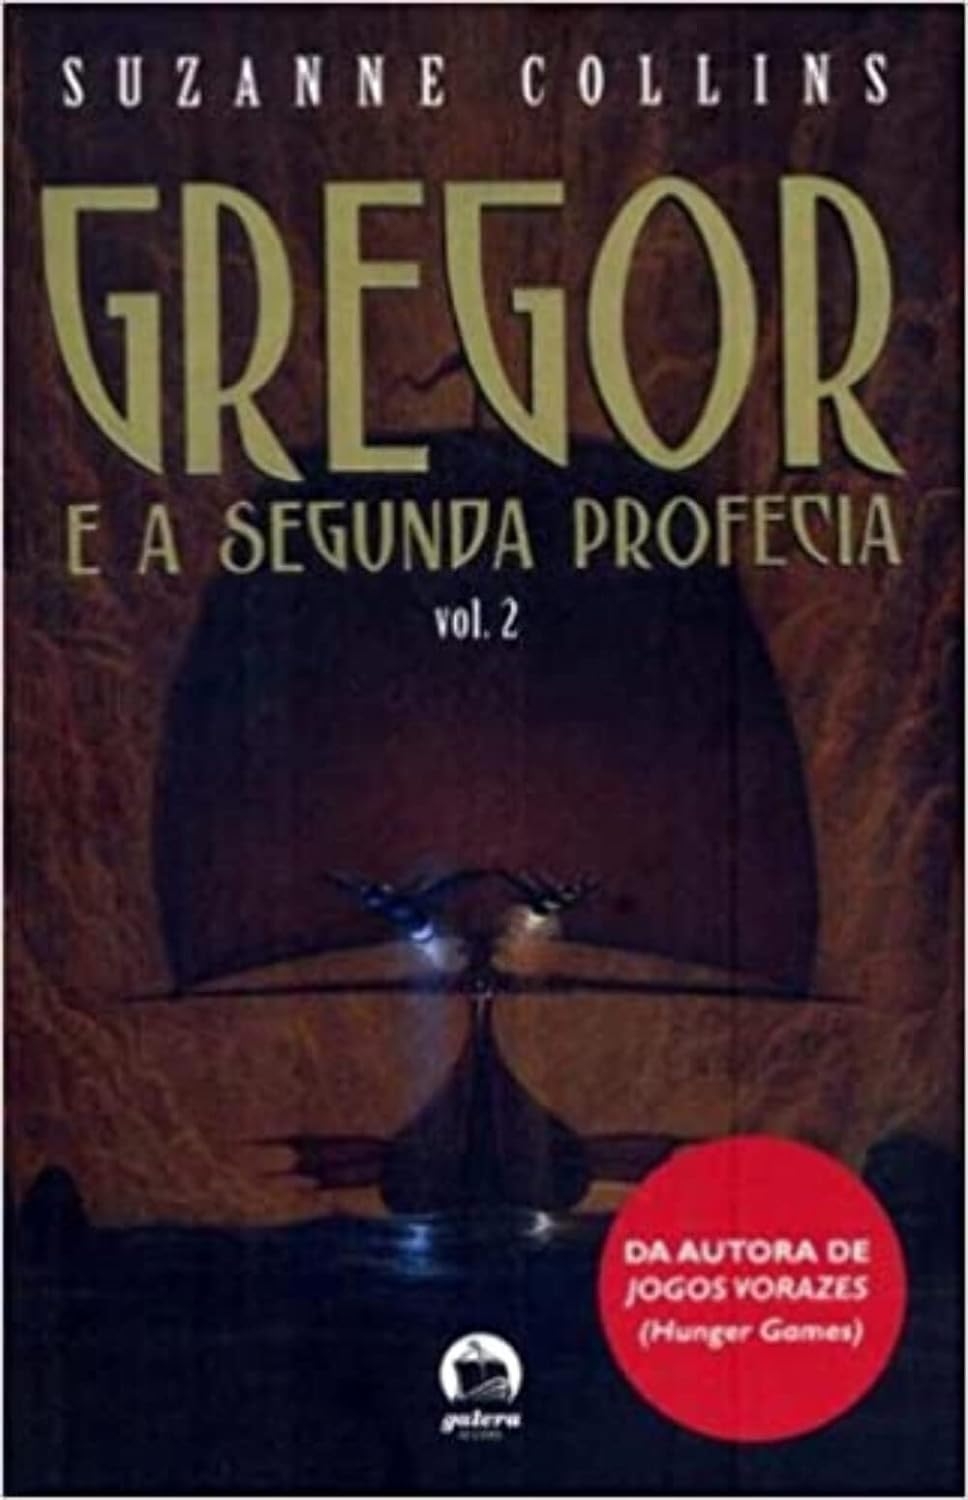 Gregor e a segunda profecia